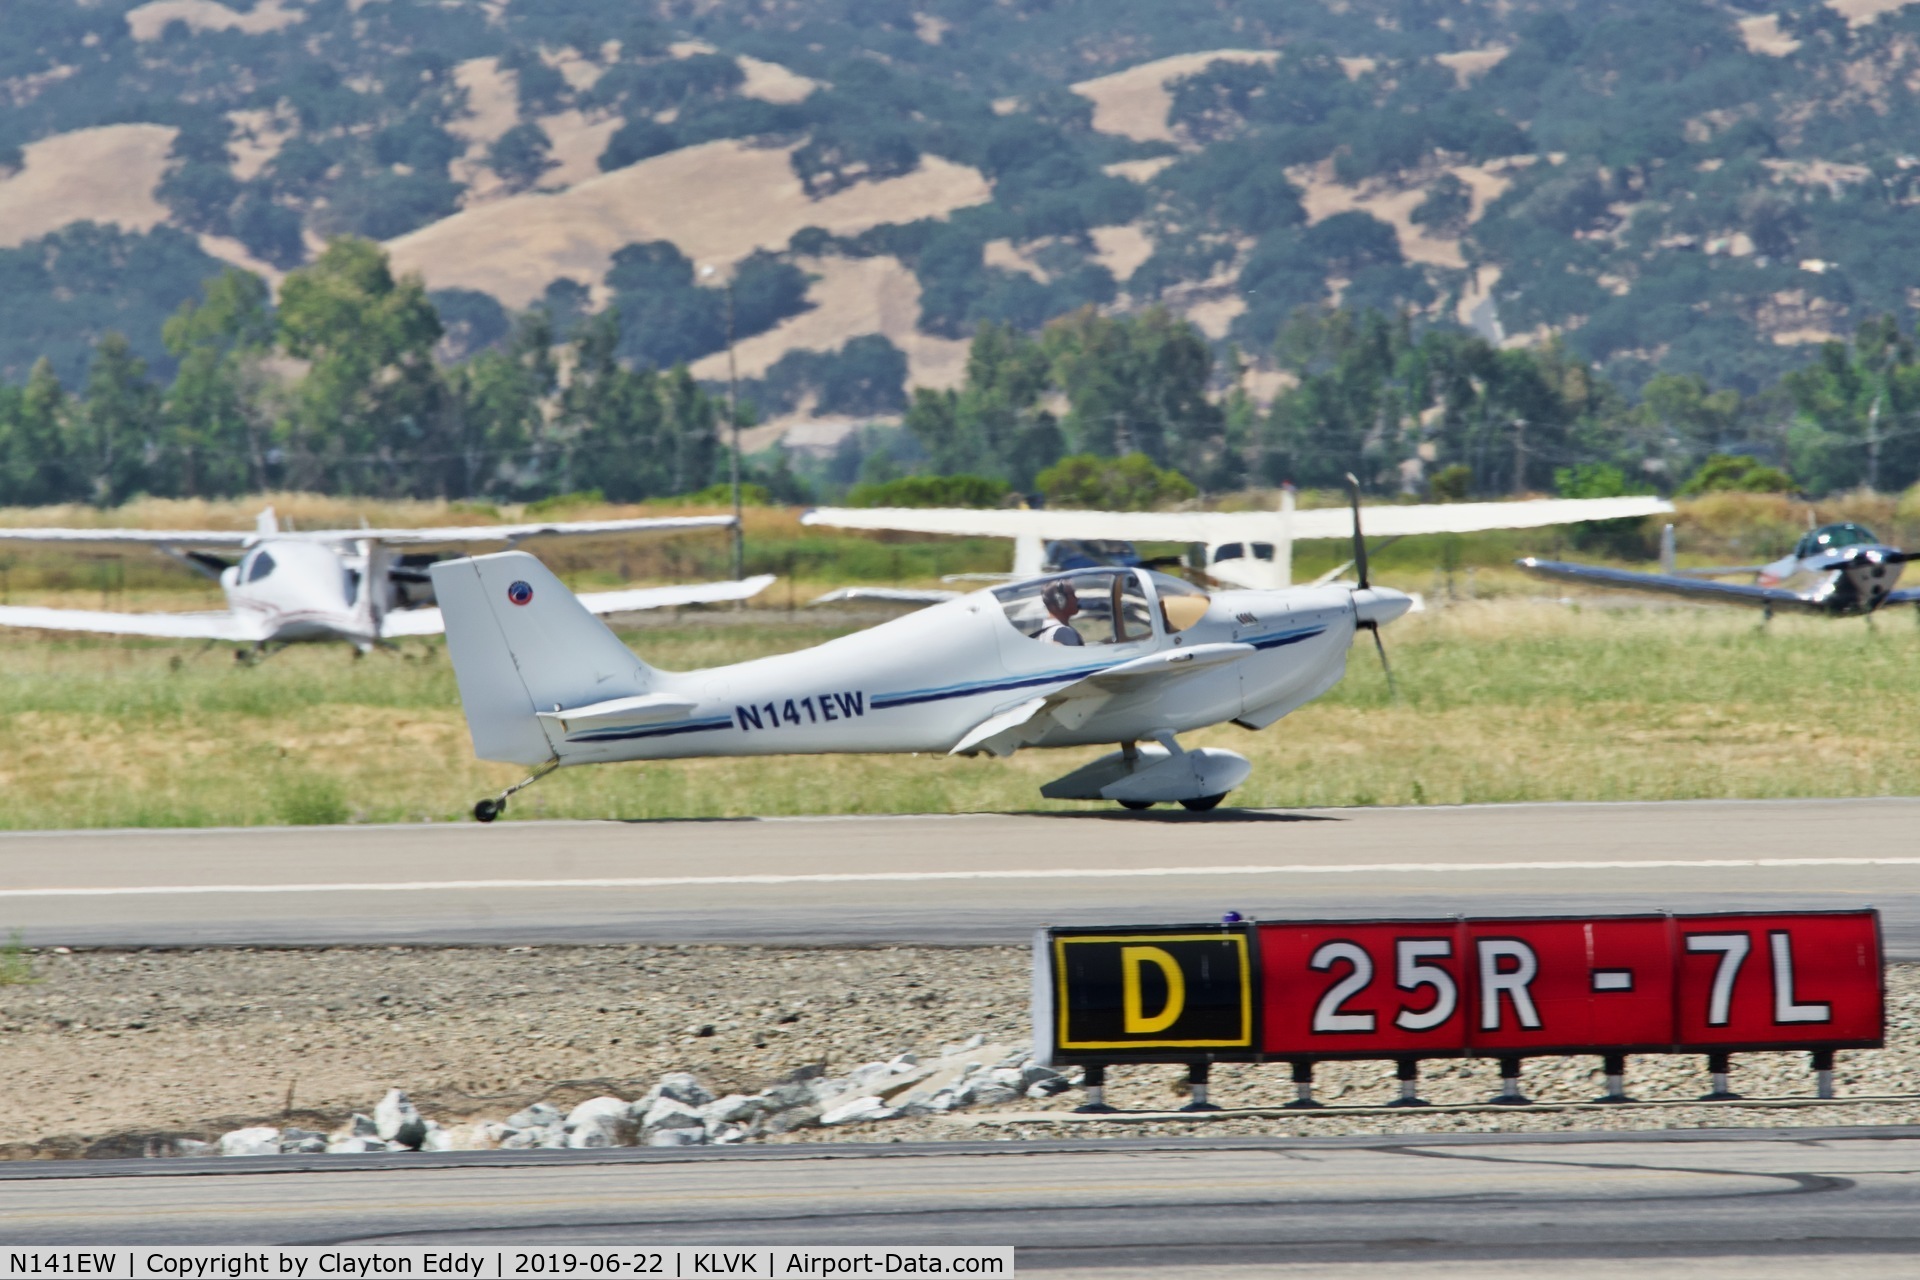 N141EW, 2005 Europa XS Monowheel C/N A141, Livermore Airport California 2019.